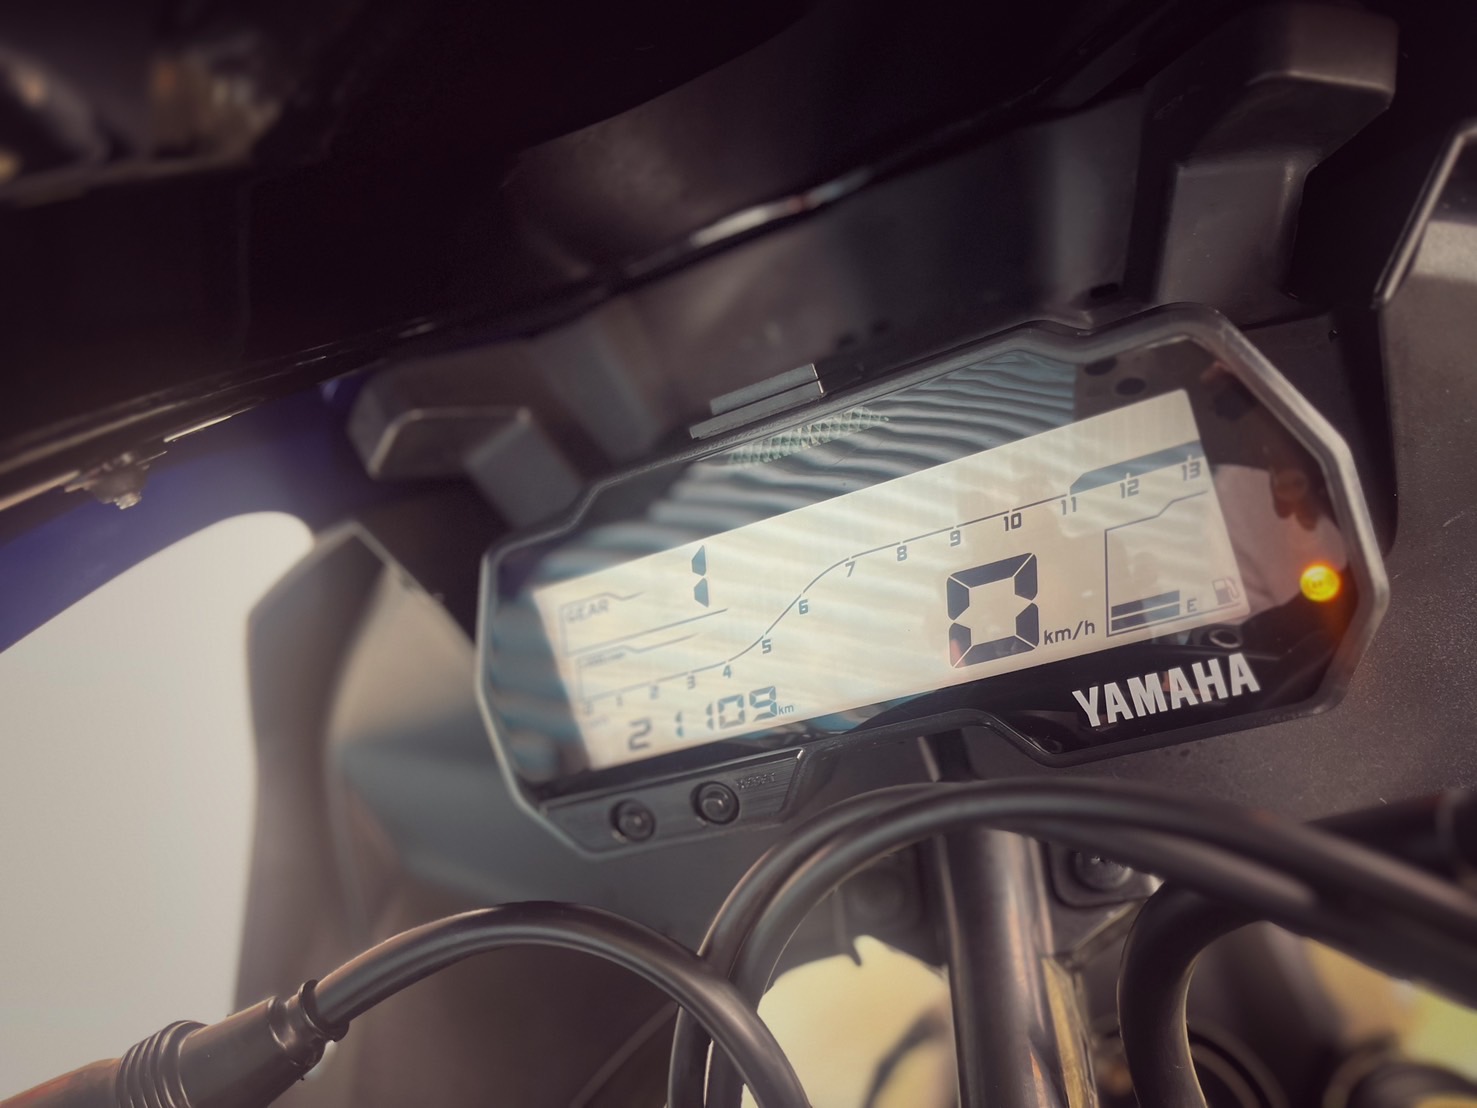 YAMAHA YZF-R15 - 中古/二手車出售中 LeoVince排氣管 WH!Z腳踏 行車記錄器 超多改裝 小資族二手重機買賣 | 小資族二手重機買賣